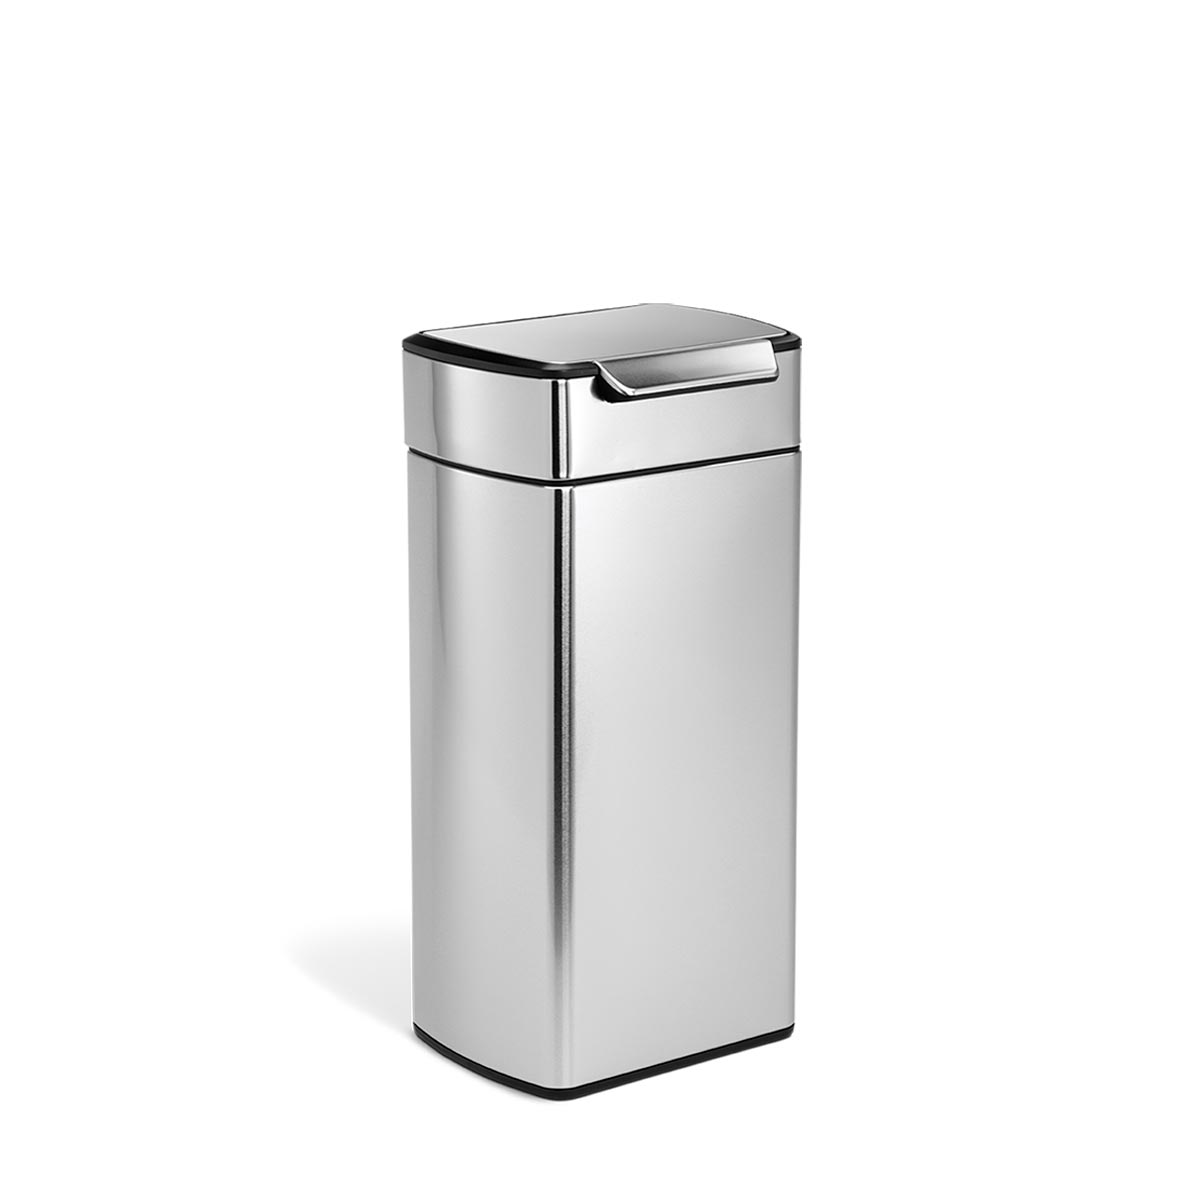 simplehuman 30 litre rectangular touch-bar bin, fingerprint-proof stainless steel